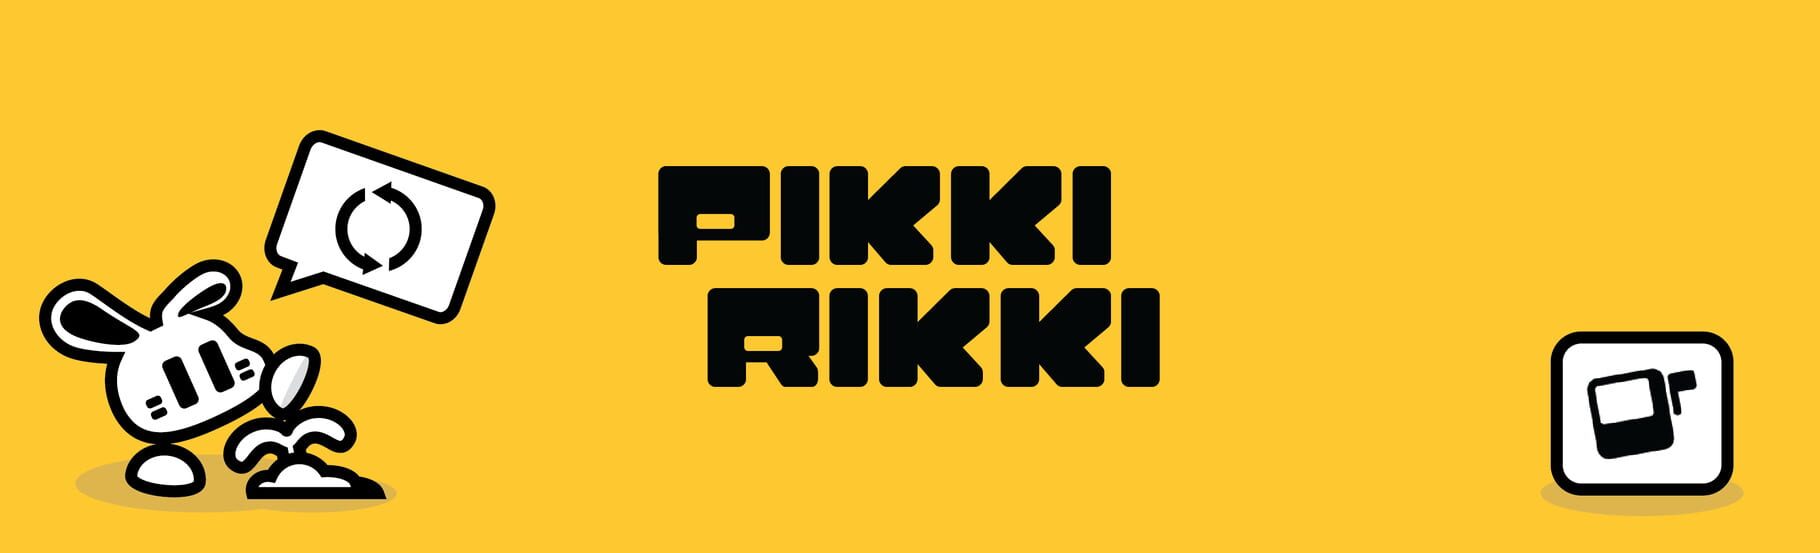 Arte - Pikki Rikki